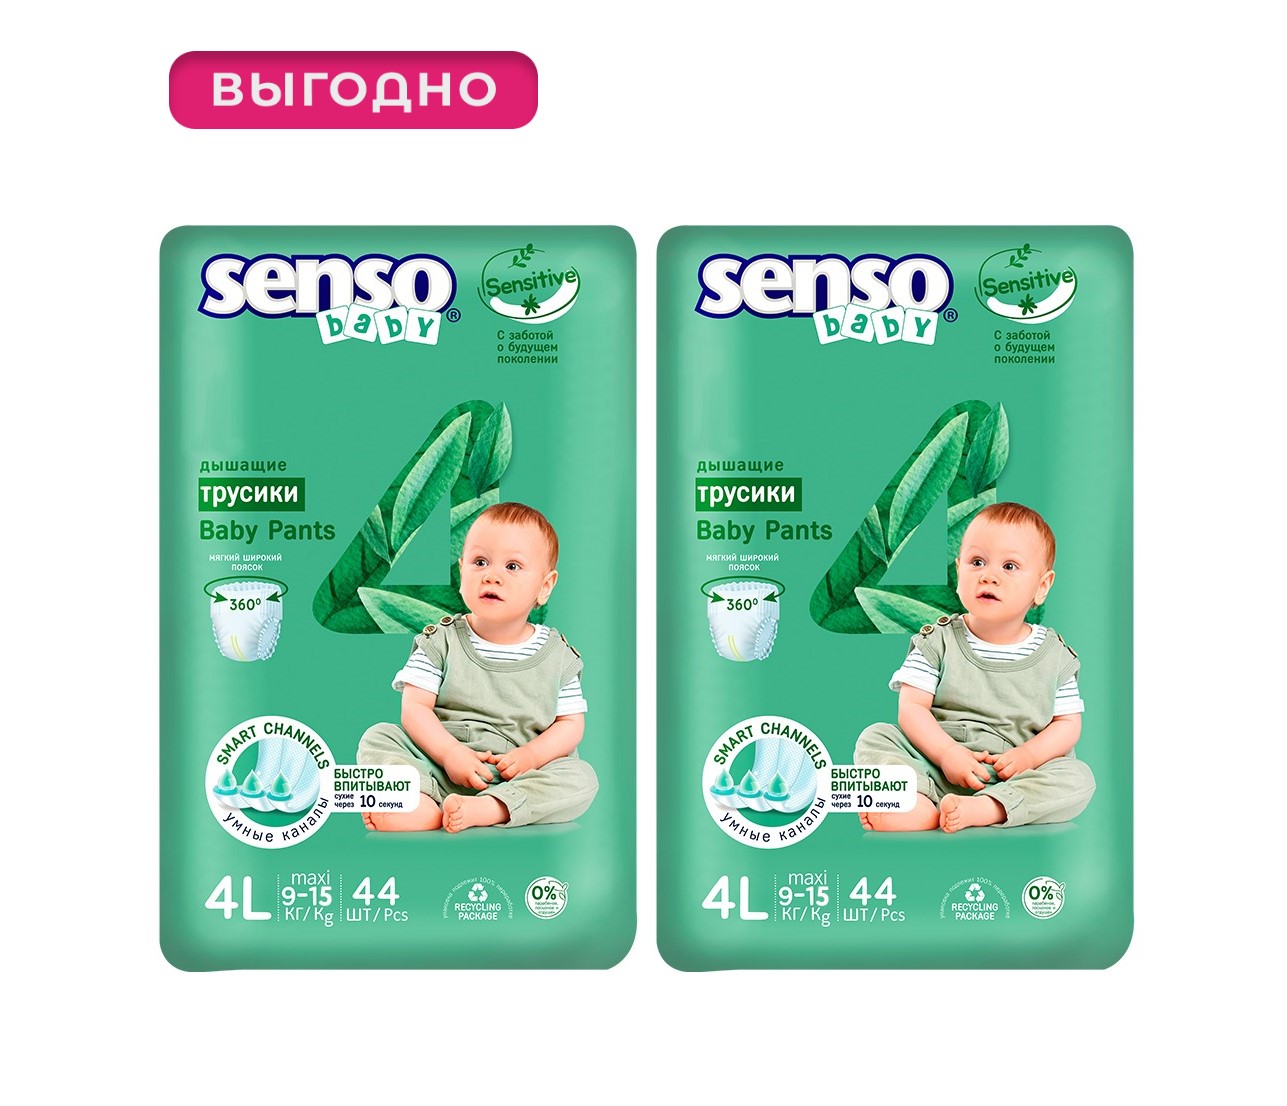 Трусики для детей SENSO BABY SENSITIVE 4L maxi (9-15кг) 44шт, 2 упаковки